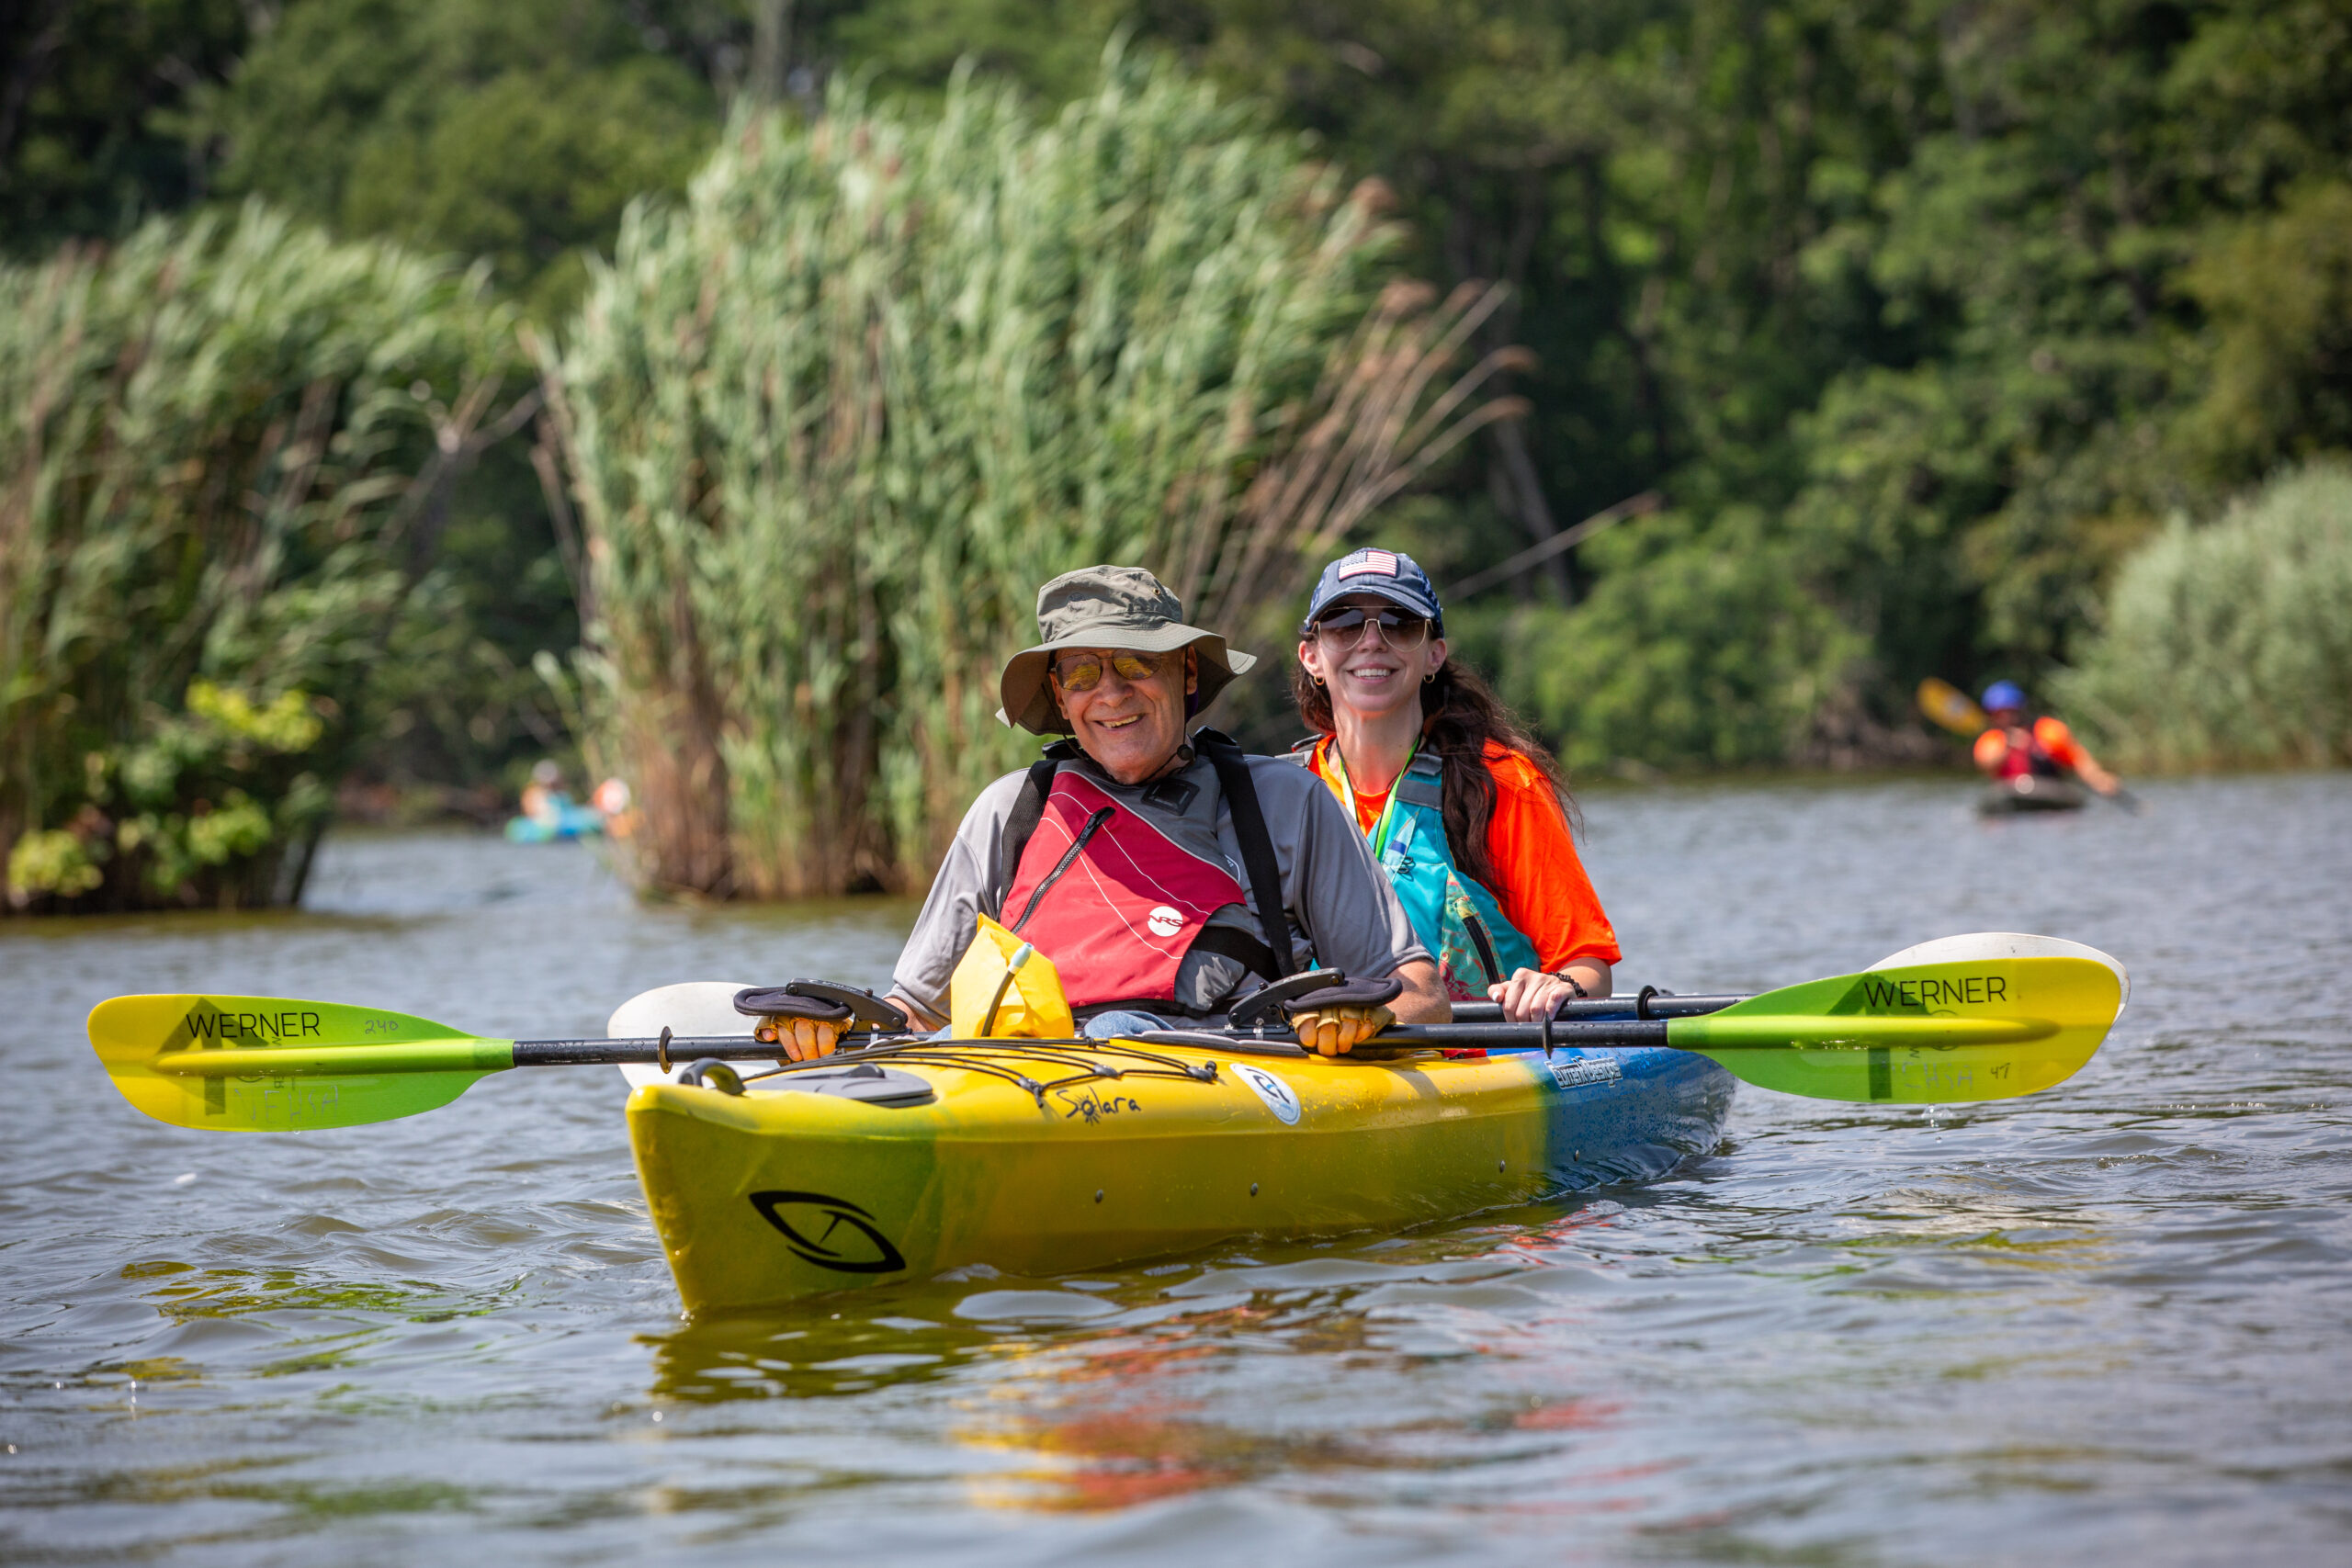 Disabled veteran and woman enjoy kayaking at the VA Summer Sports Clinic